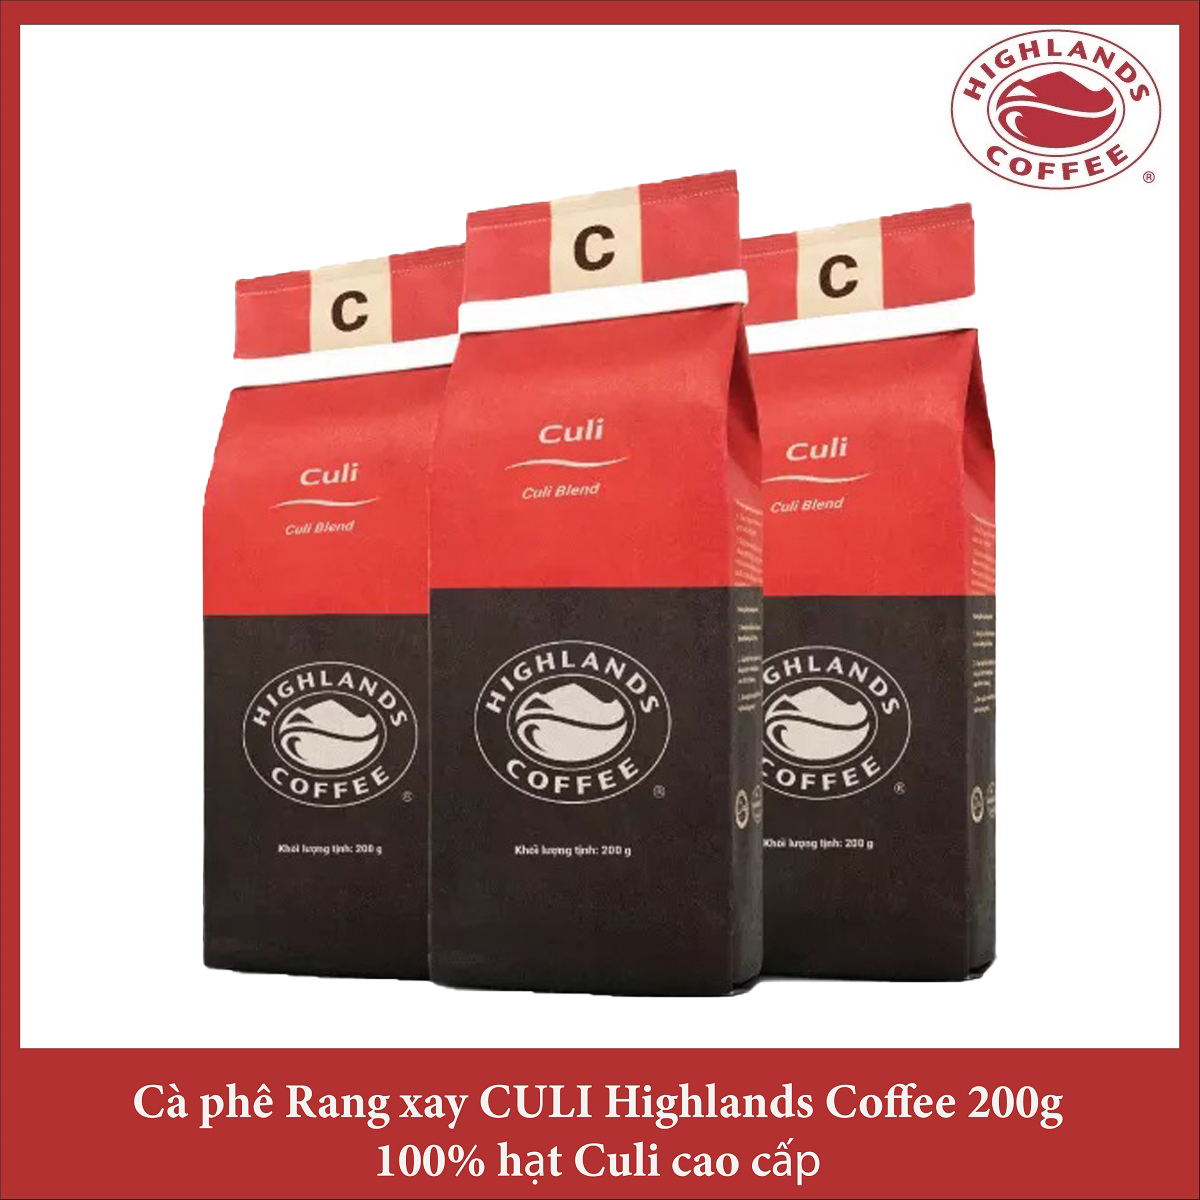 Combo 3 gói Cà phê rang xay Culi Highlands coffee 200g - Culi Blend